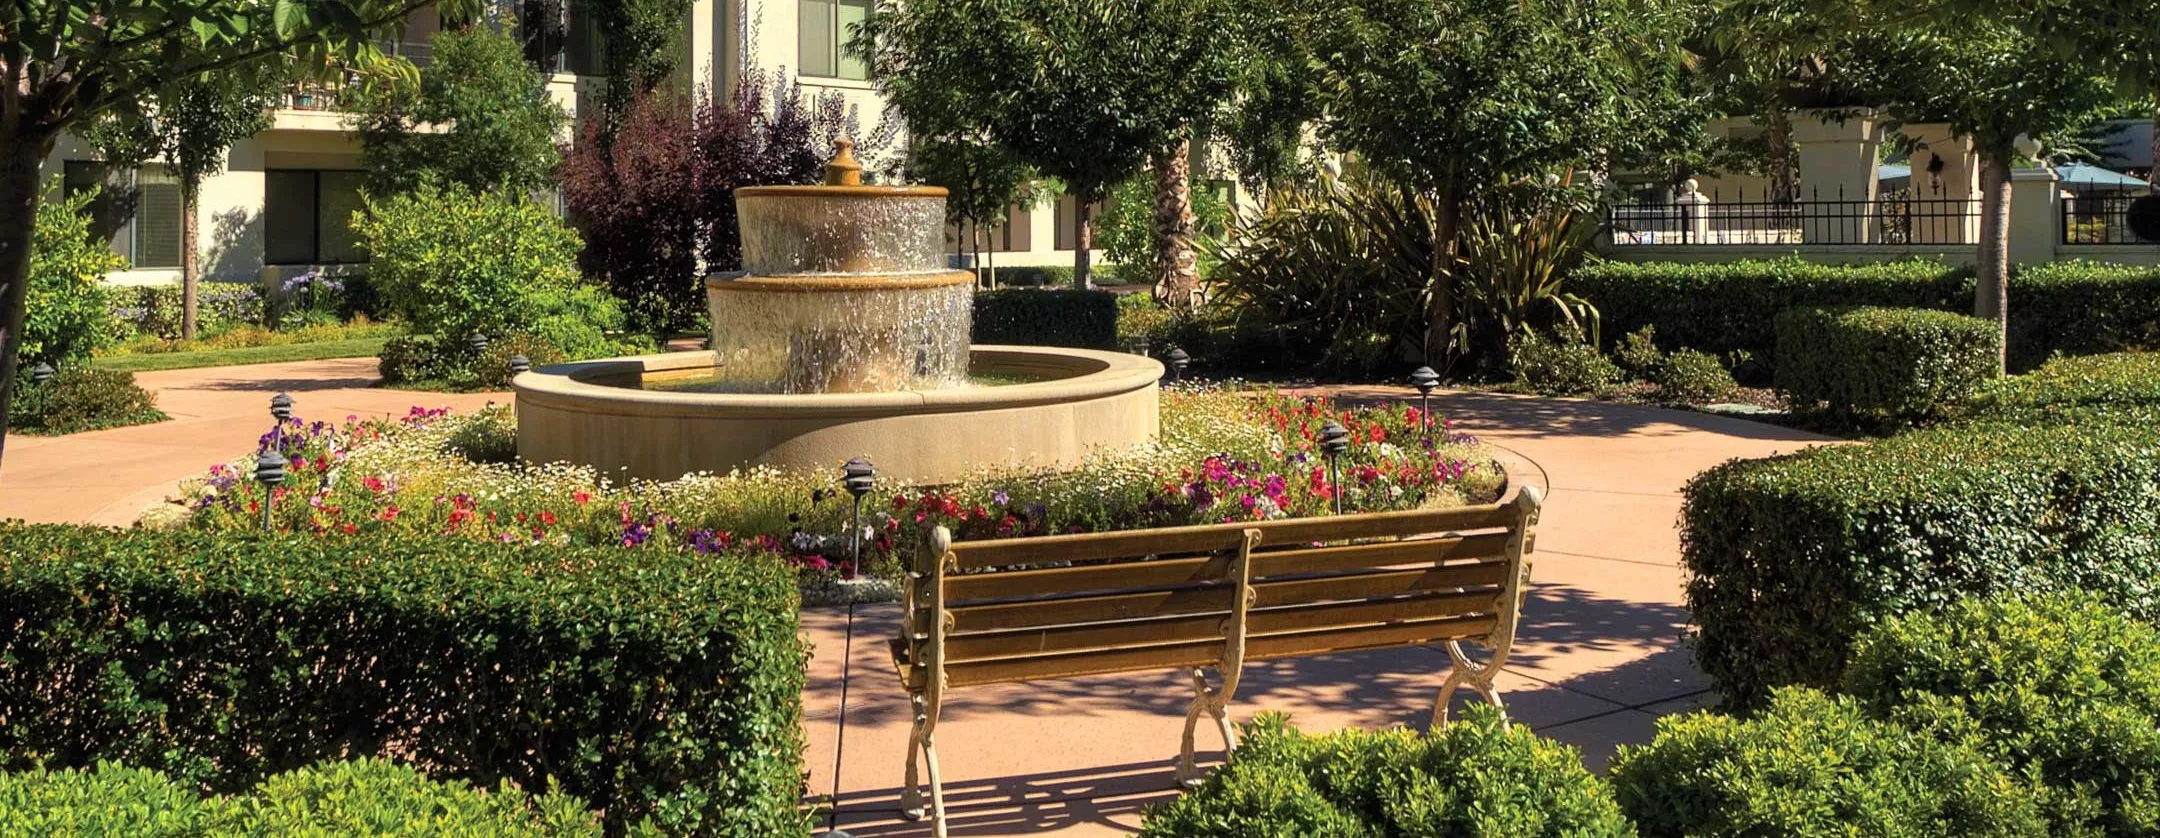 Montecito Fountain in garden